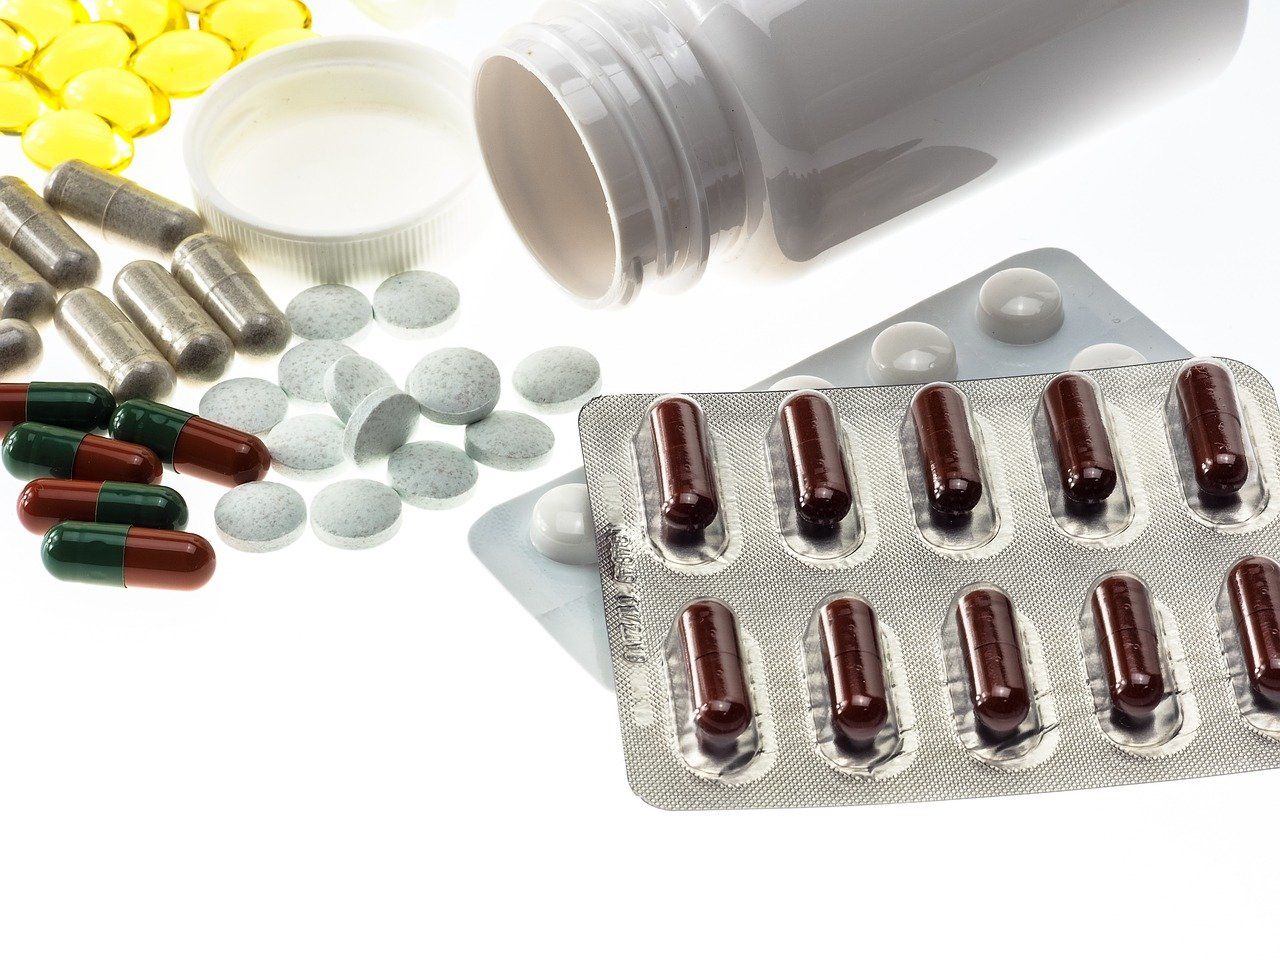 Farmaciștii avertizează: Există un risc major de blocare a aprovizionării farmaciilor